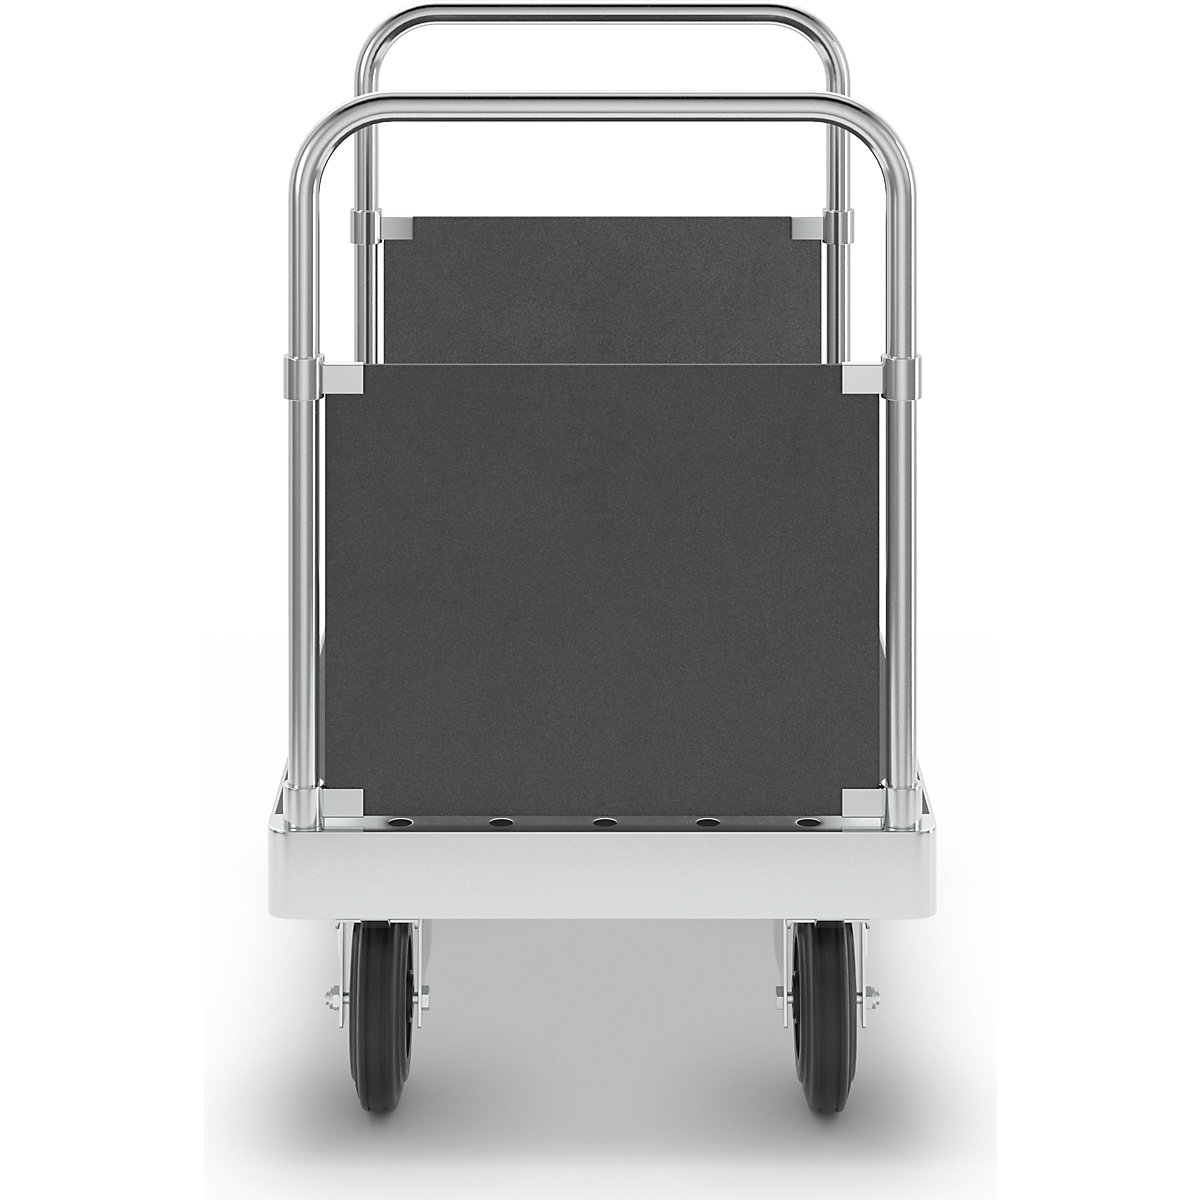 Carro de plataforma JUMBO galvanizado – Kongamek (Imagem do produto 4)-3